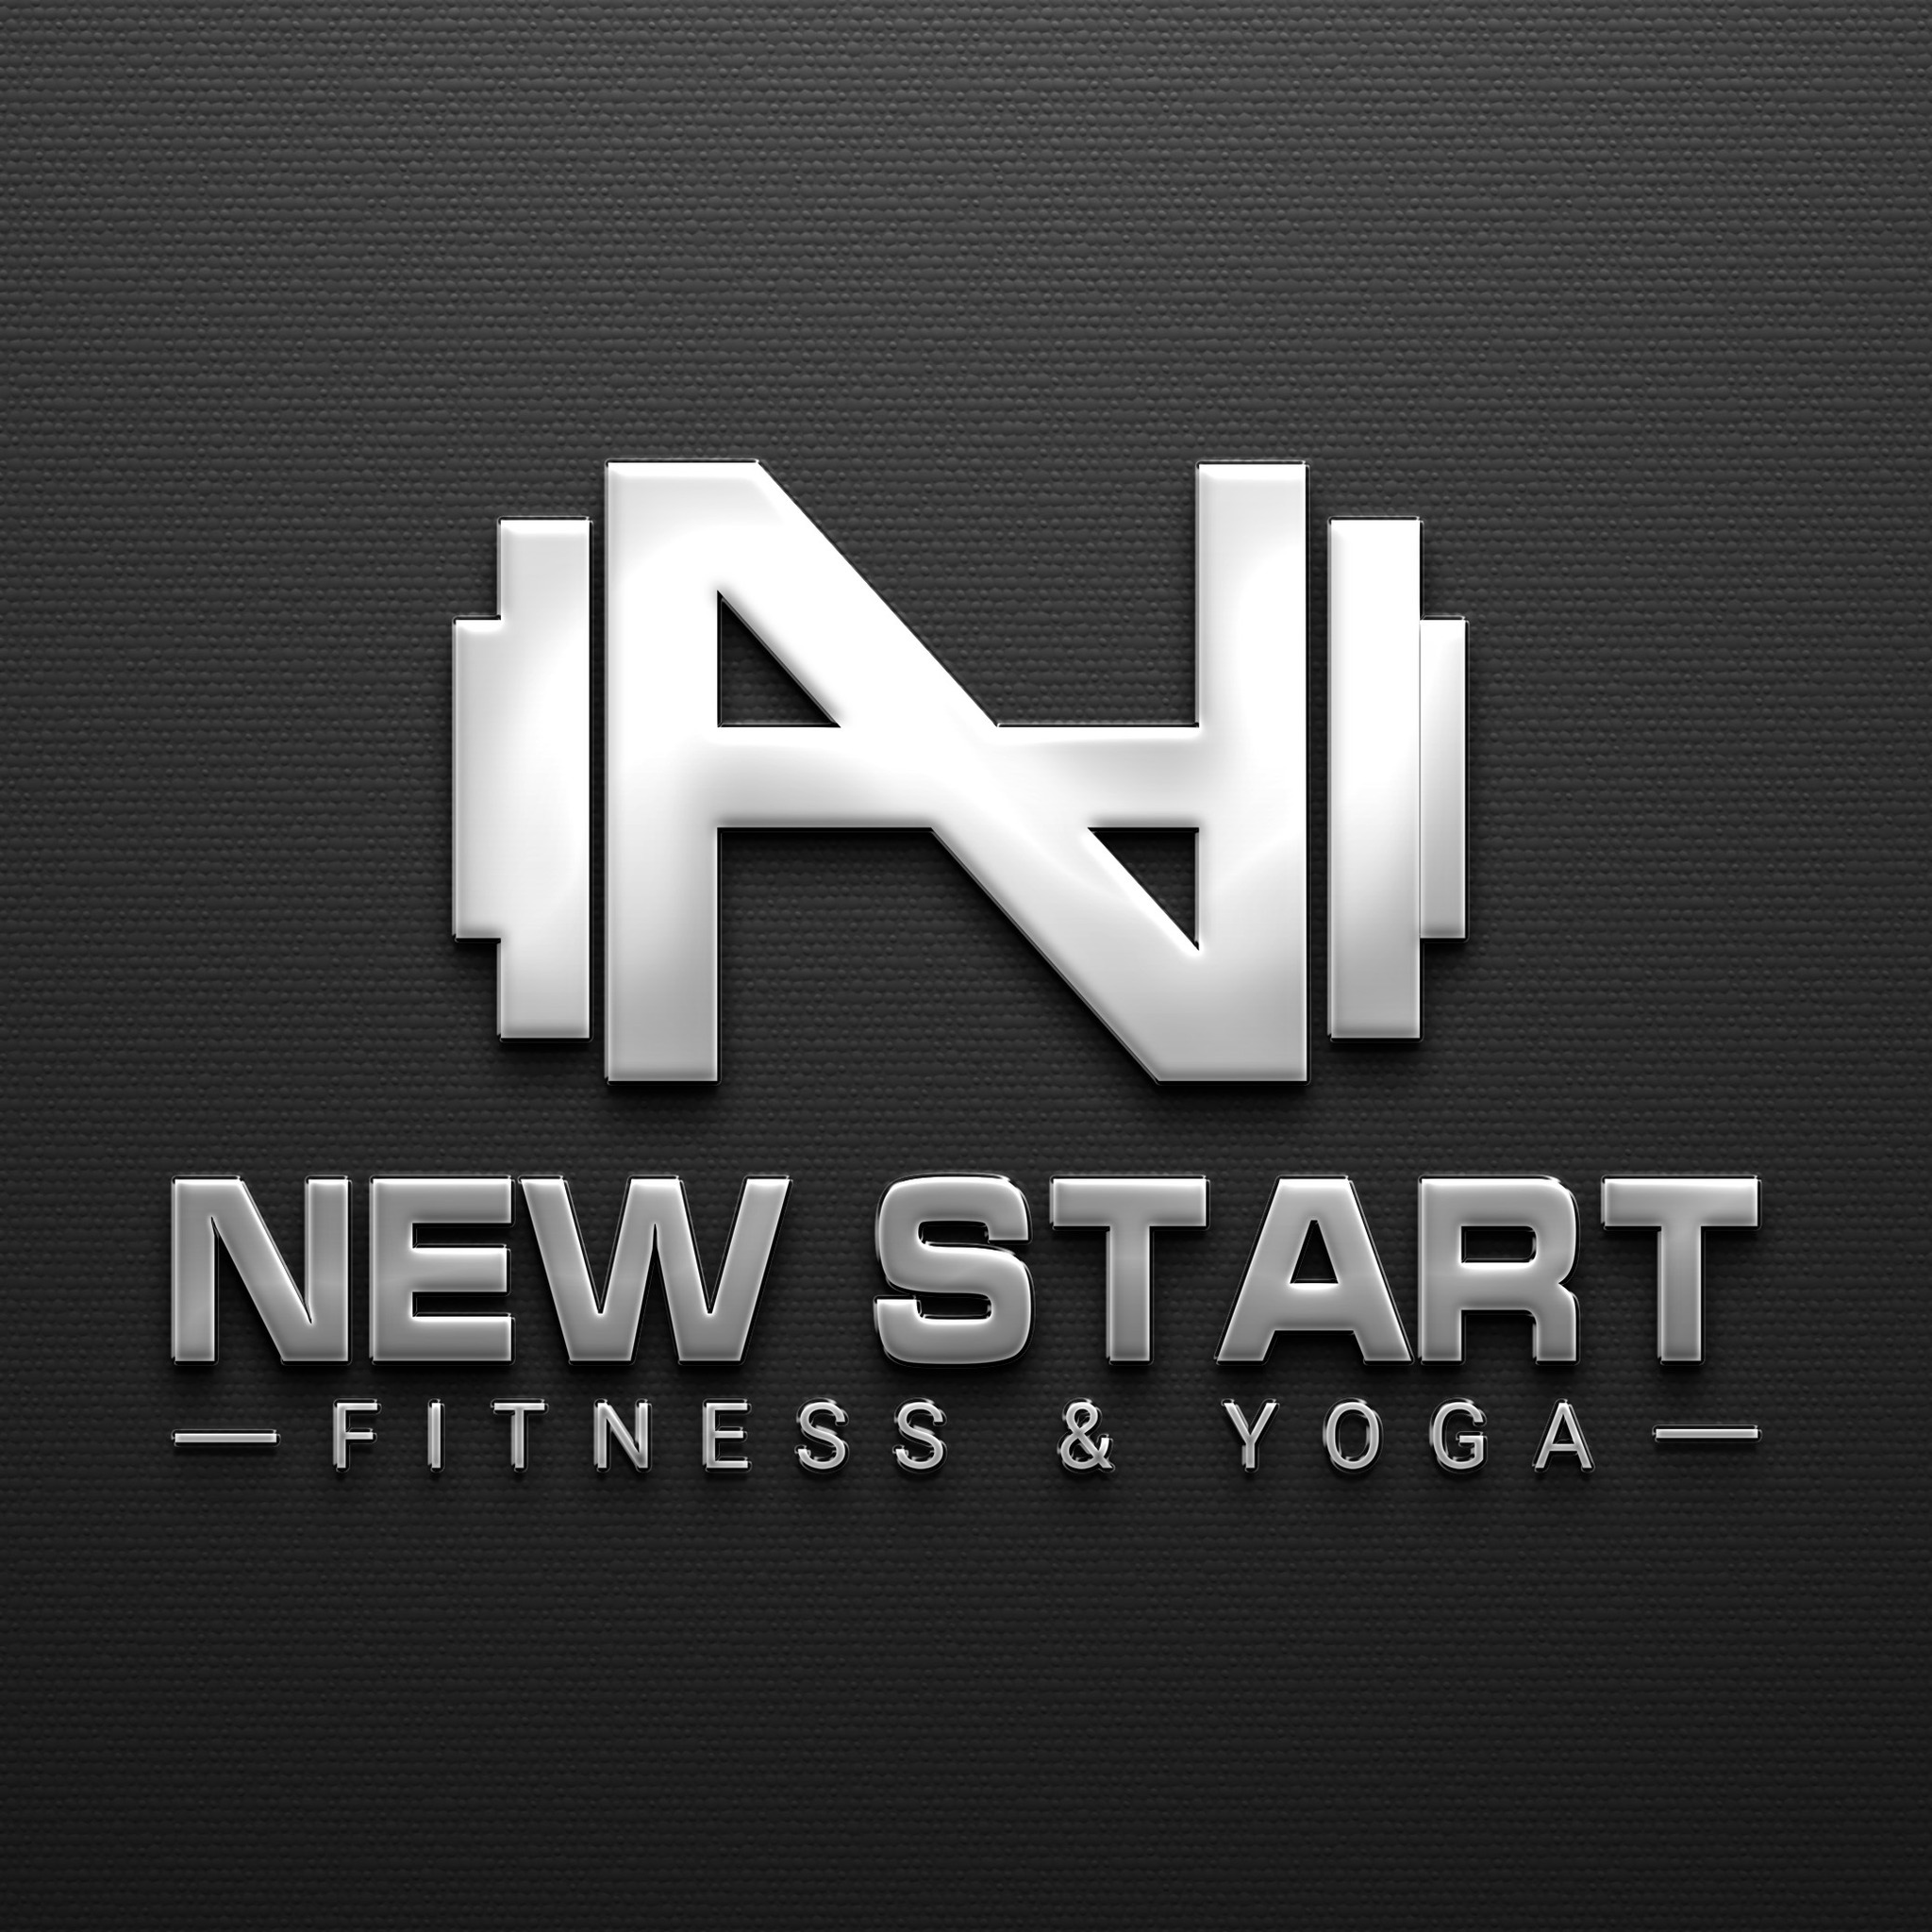 New Start Fitness & Yoga